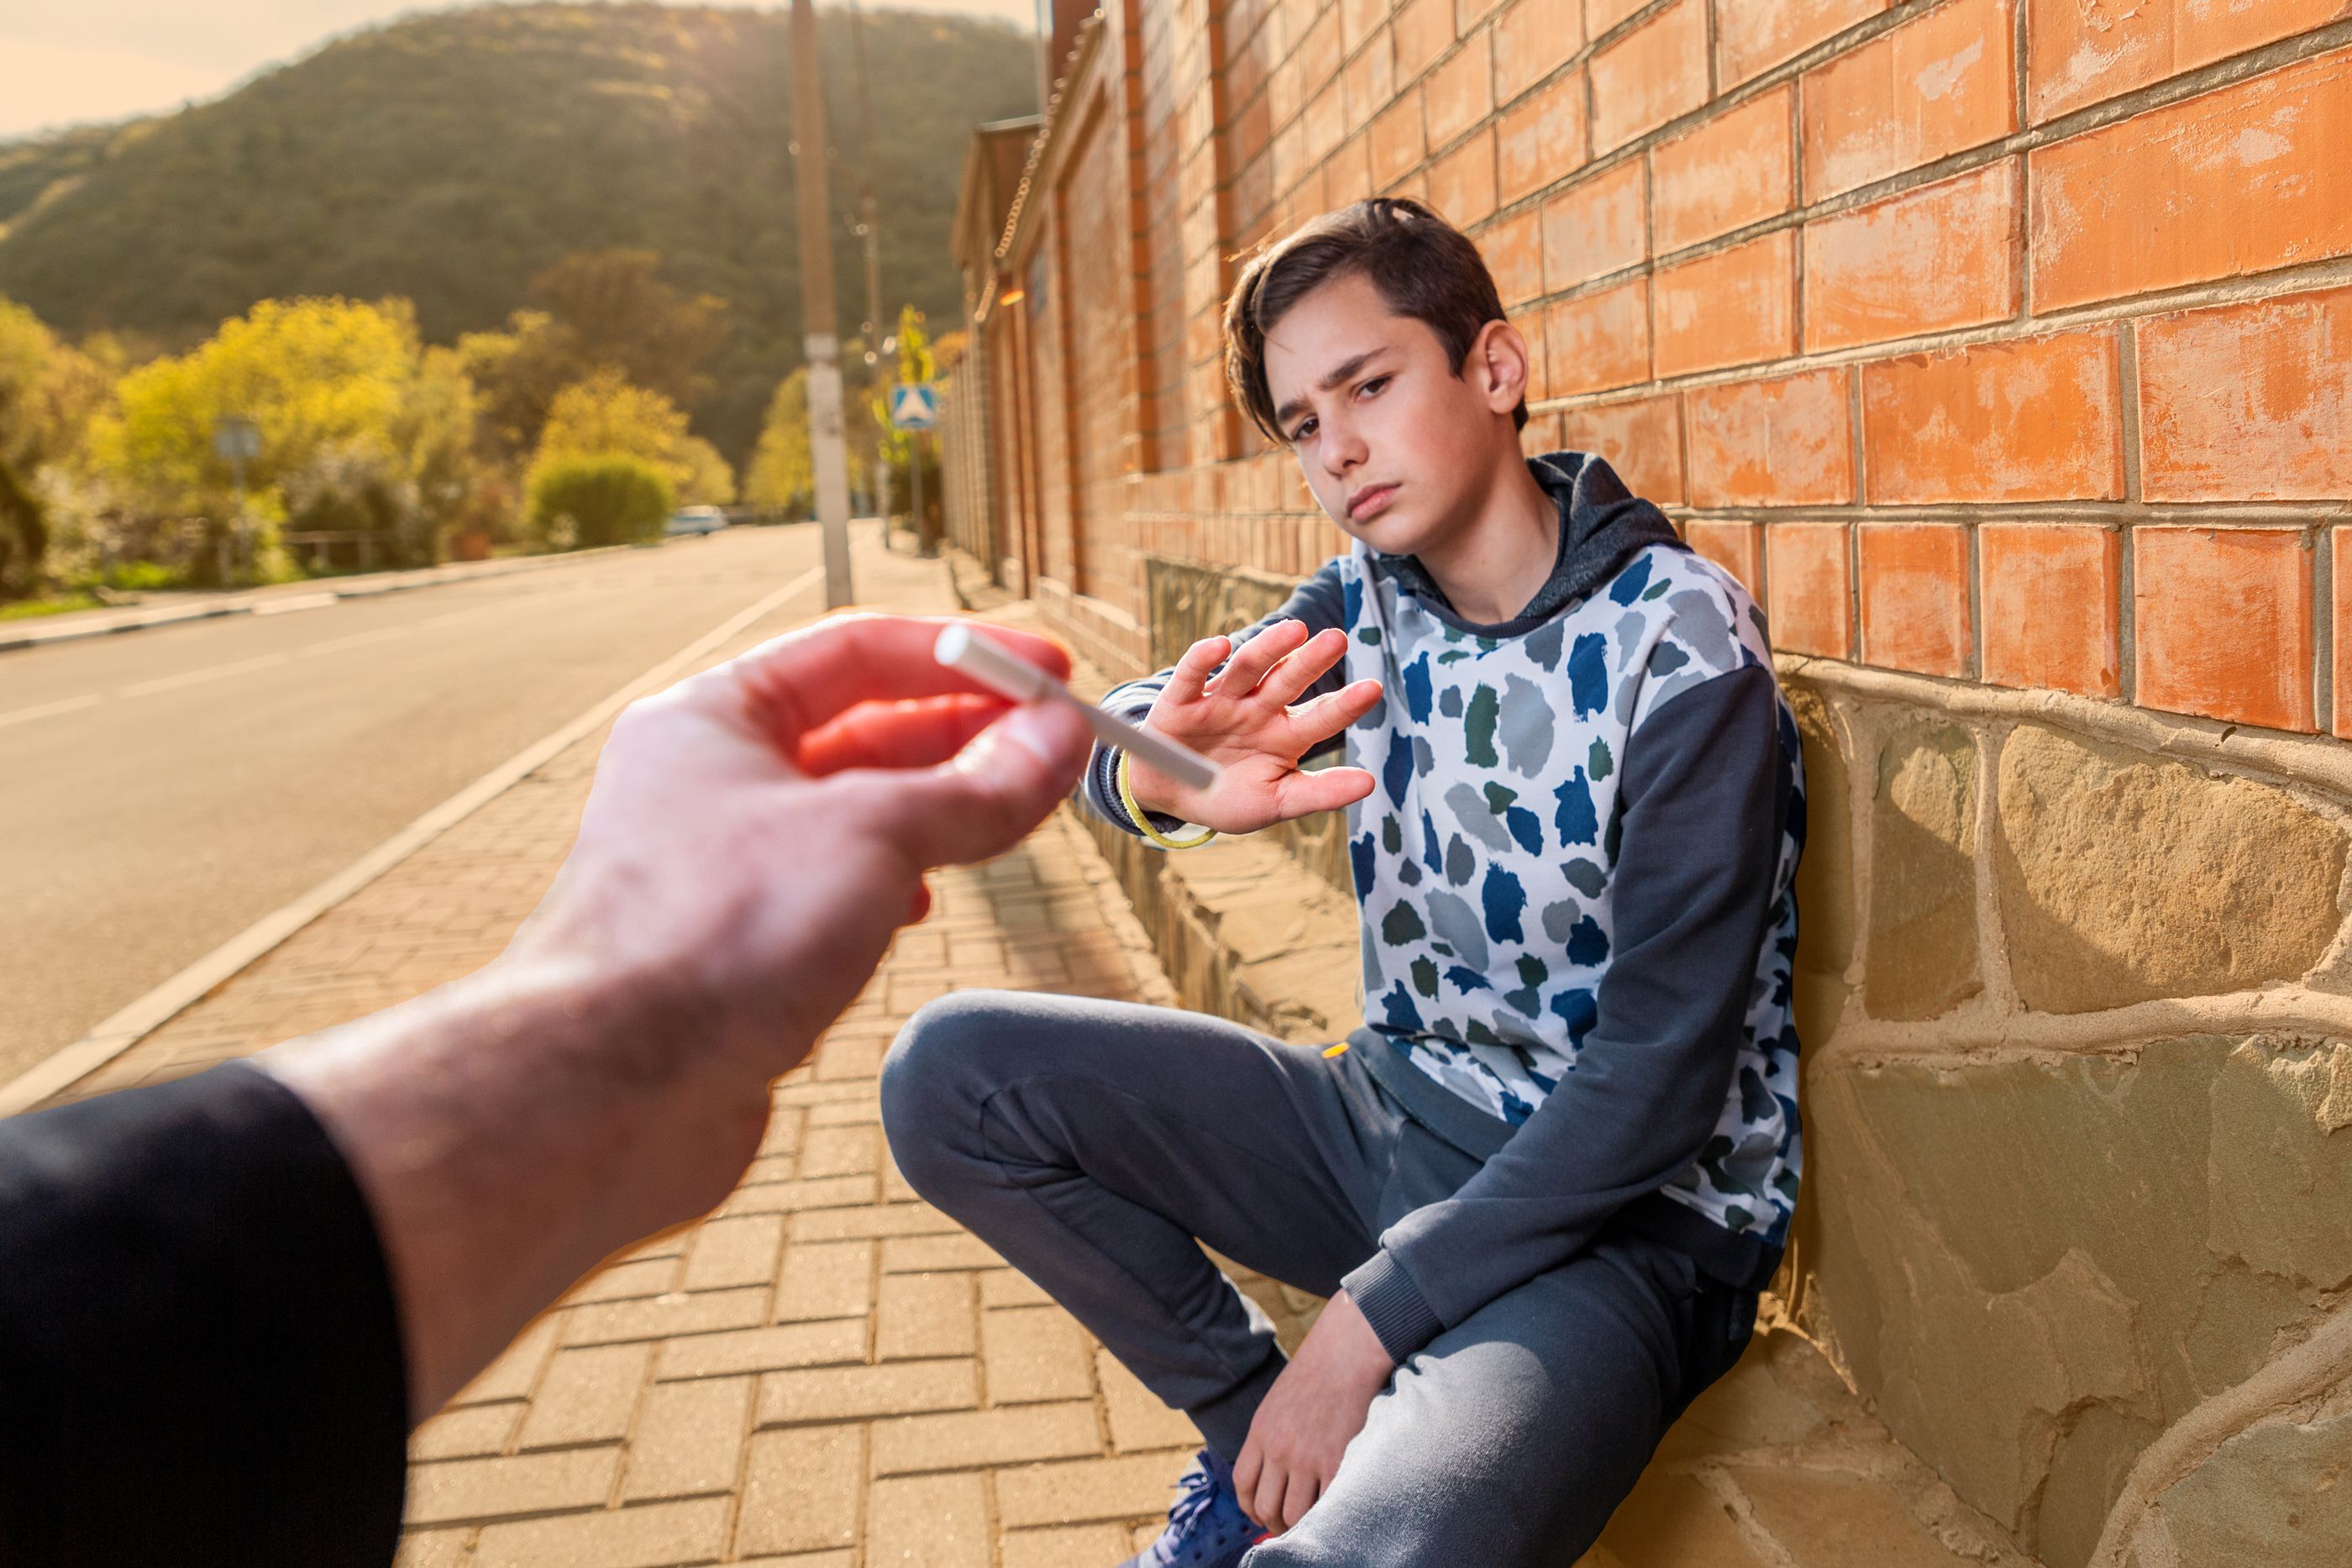 Jugendlicher, an einer Wand hockend, lehnt mit verneinender Geste eine Zigarette ab